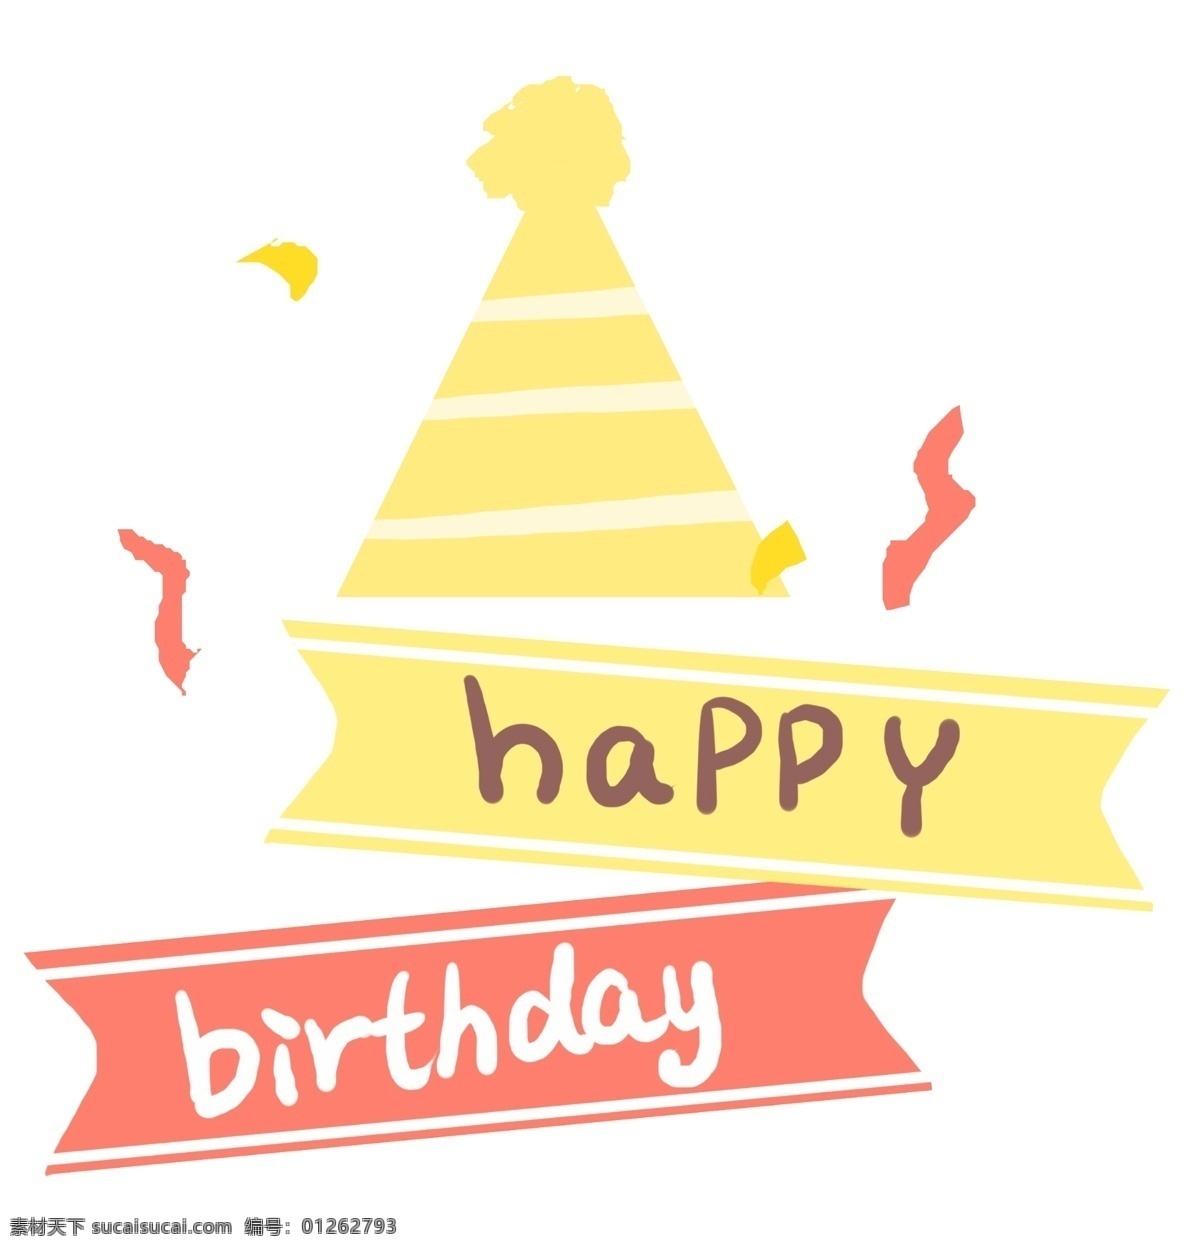 生日 帽子 卡通 插画 黄色的帽子 卡通插画 生日快乐 蛋糕 过生日 生日会 生日蛋糕 生日的帽子